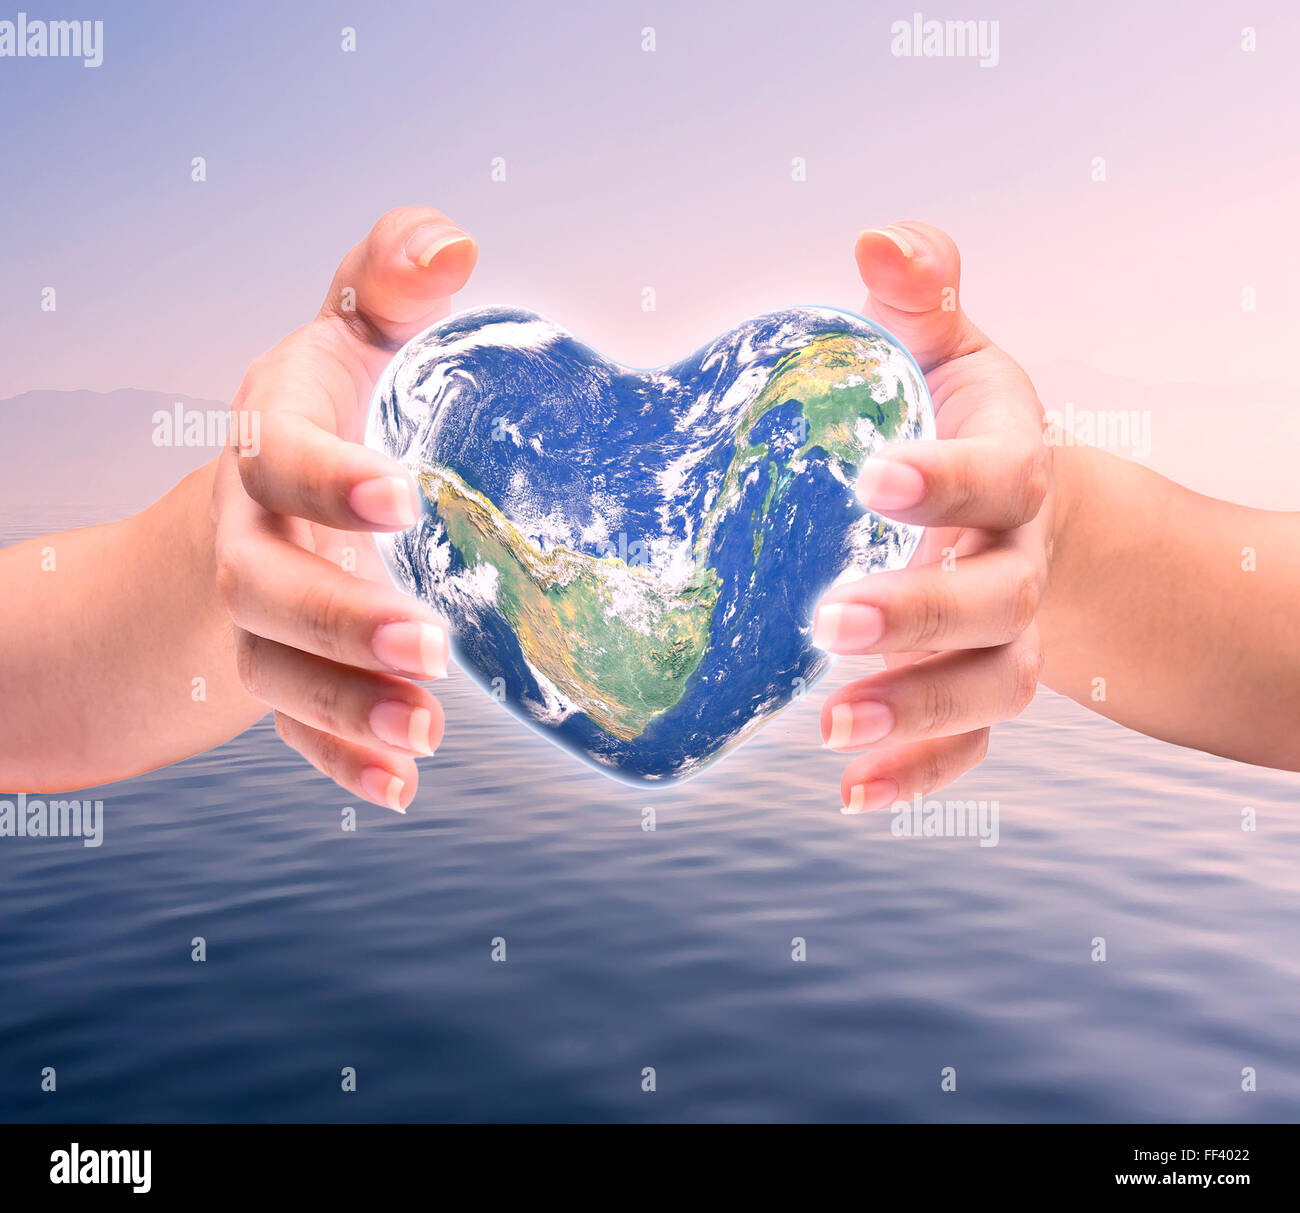 Monde en forme de coeur avec plus de femmes des mains d'homme sur fond naturel floue arbre turquoise bleu cyan et du ciel : World Heart hea Banque D'Images